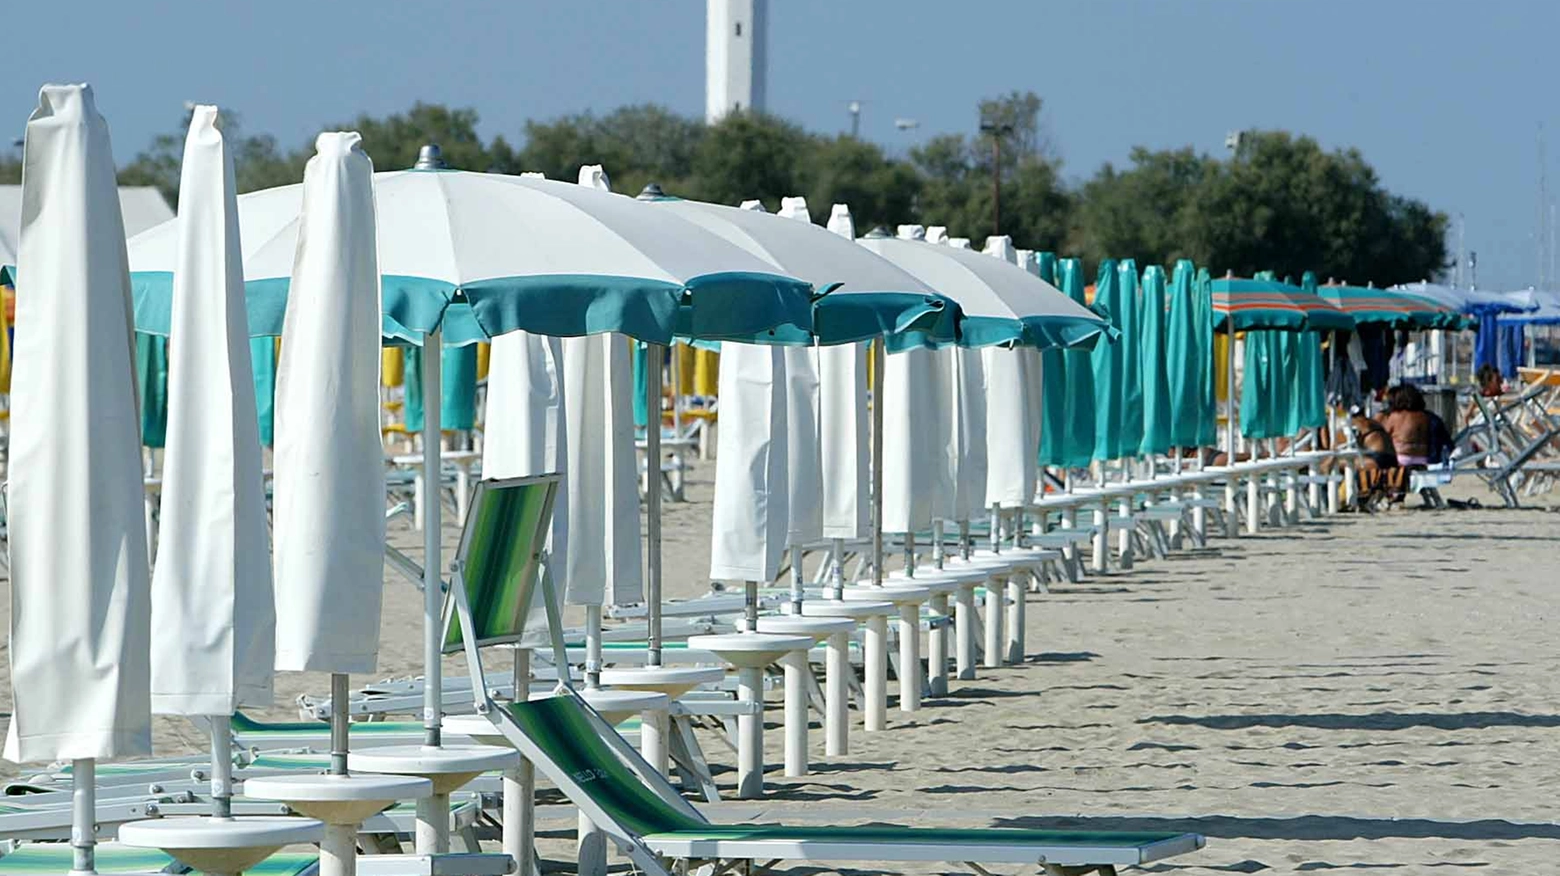 La spiaggia a Marina di Ravenna (Foto Zani)